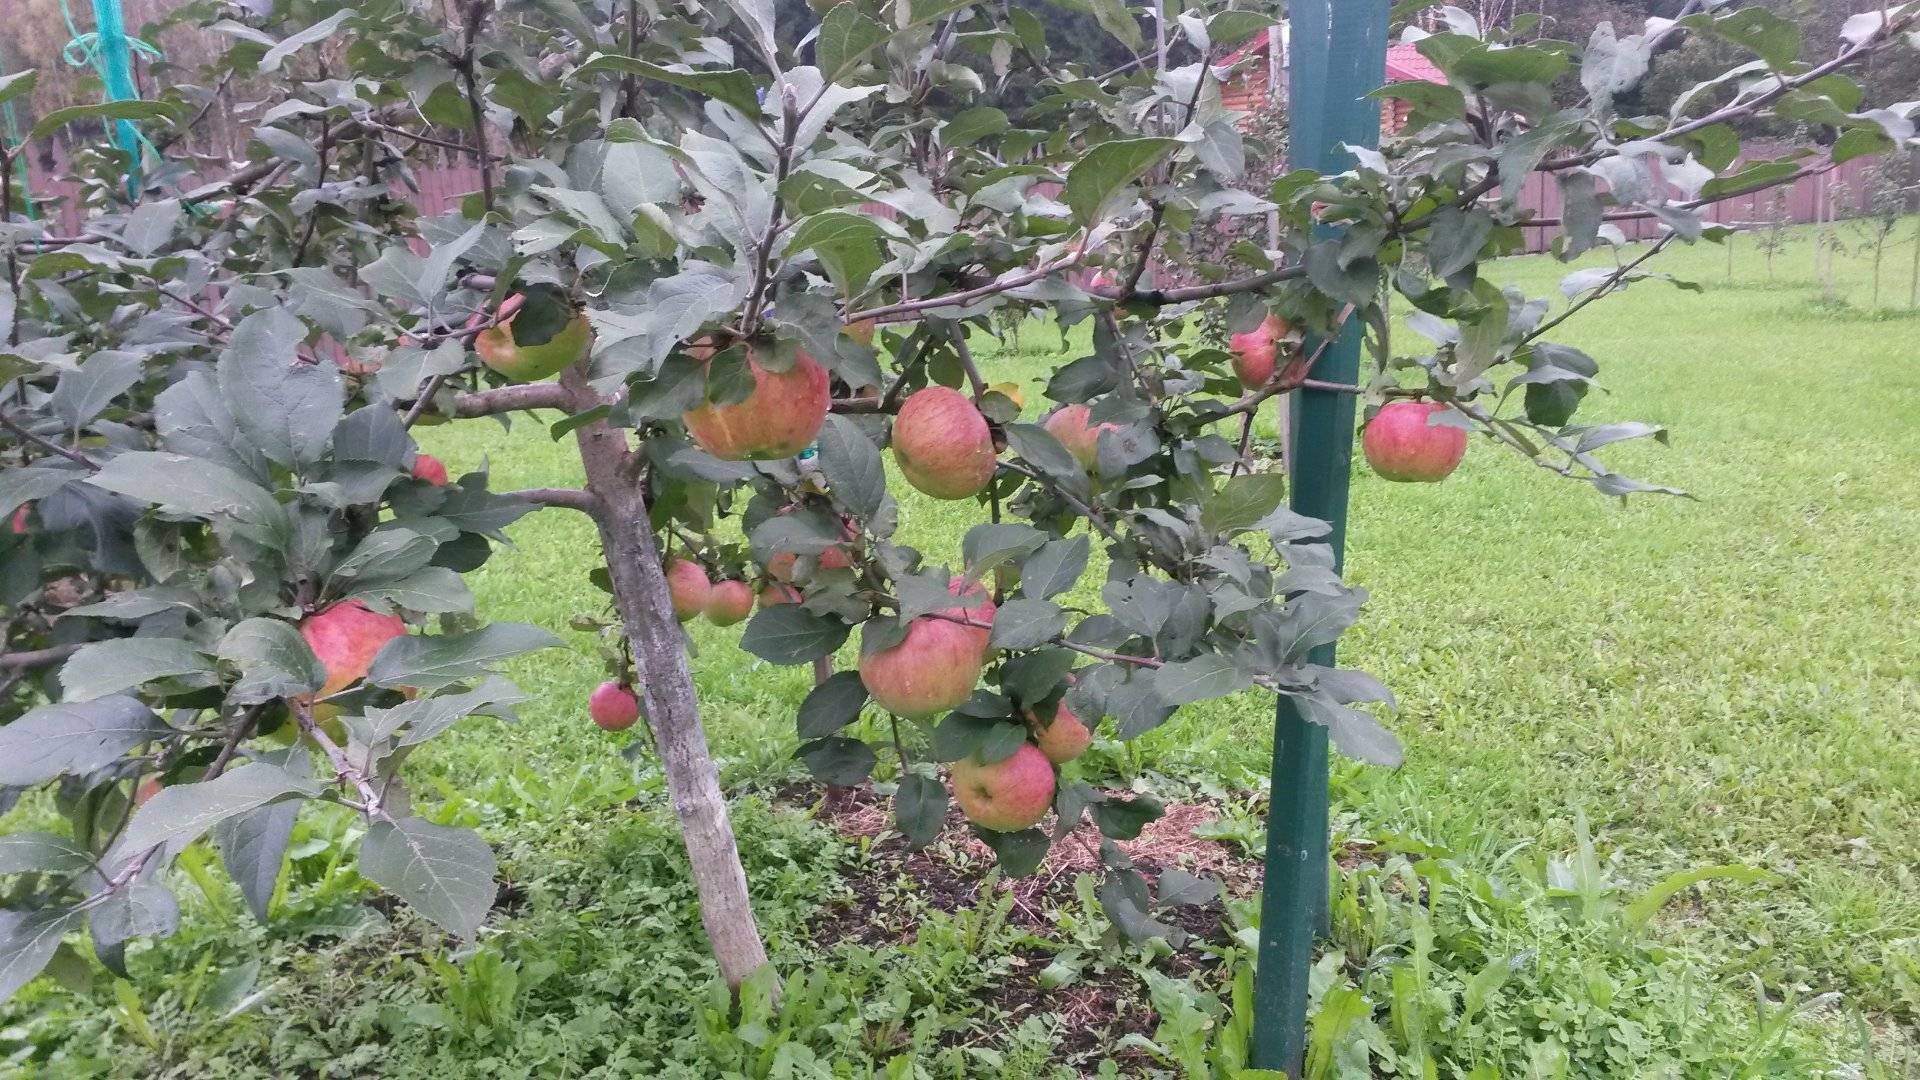 Описание сорта яблони чемпион: фото яблок, важные характеристики, урожайность с дерева